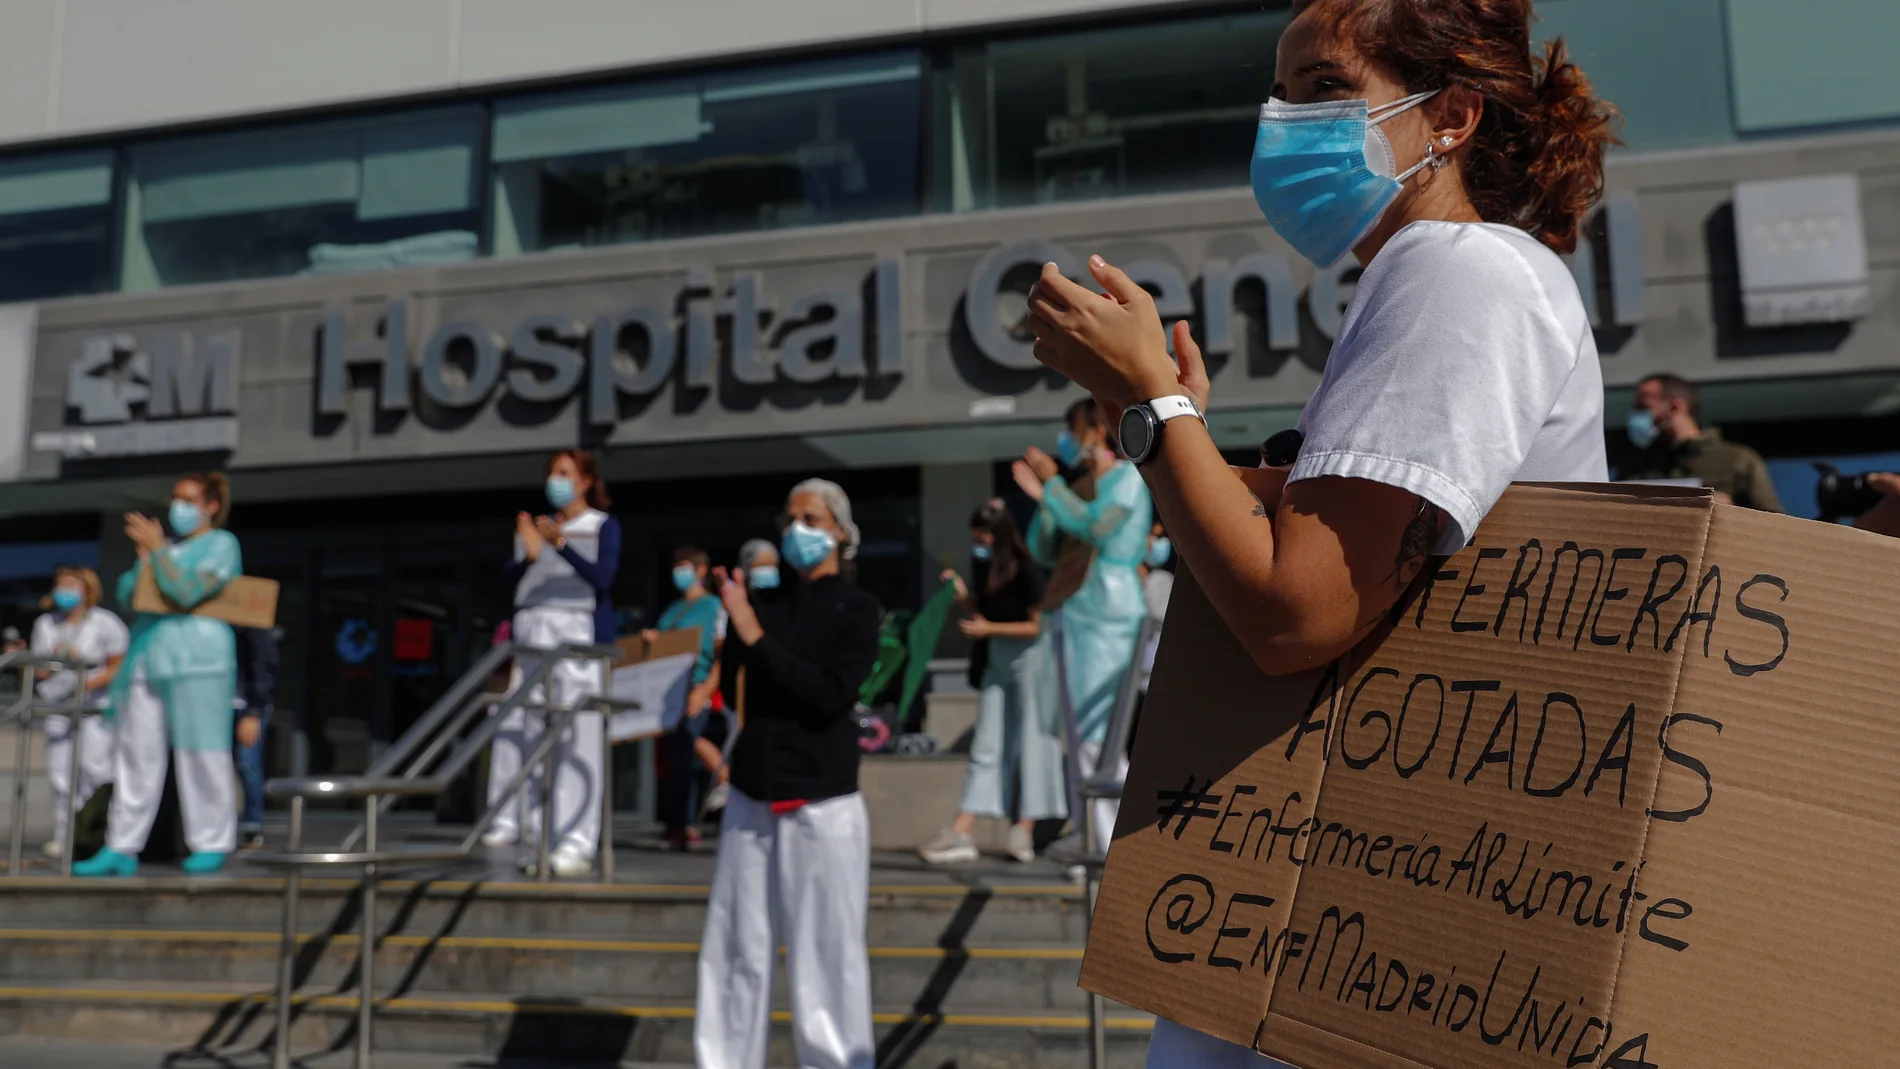 Un grupo de enfermeras se manifiesta en el exterior del hospital La Paz, en Madrid, en una imagen tomada el pasado mes de septiembre